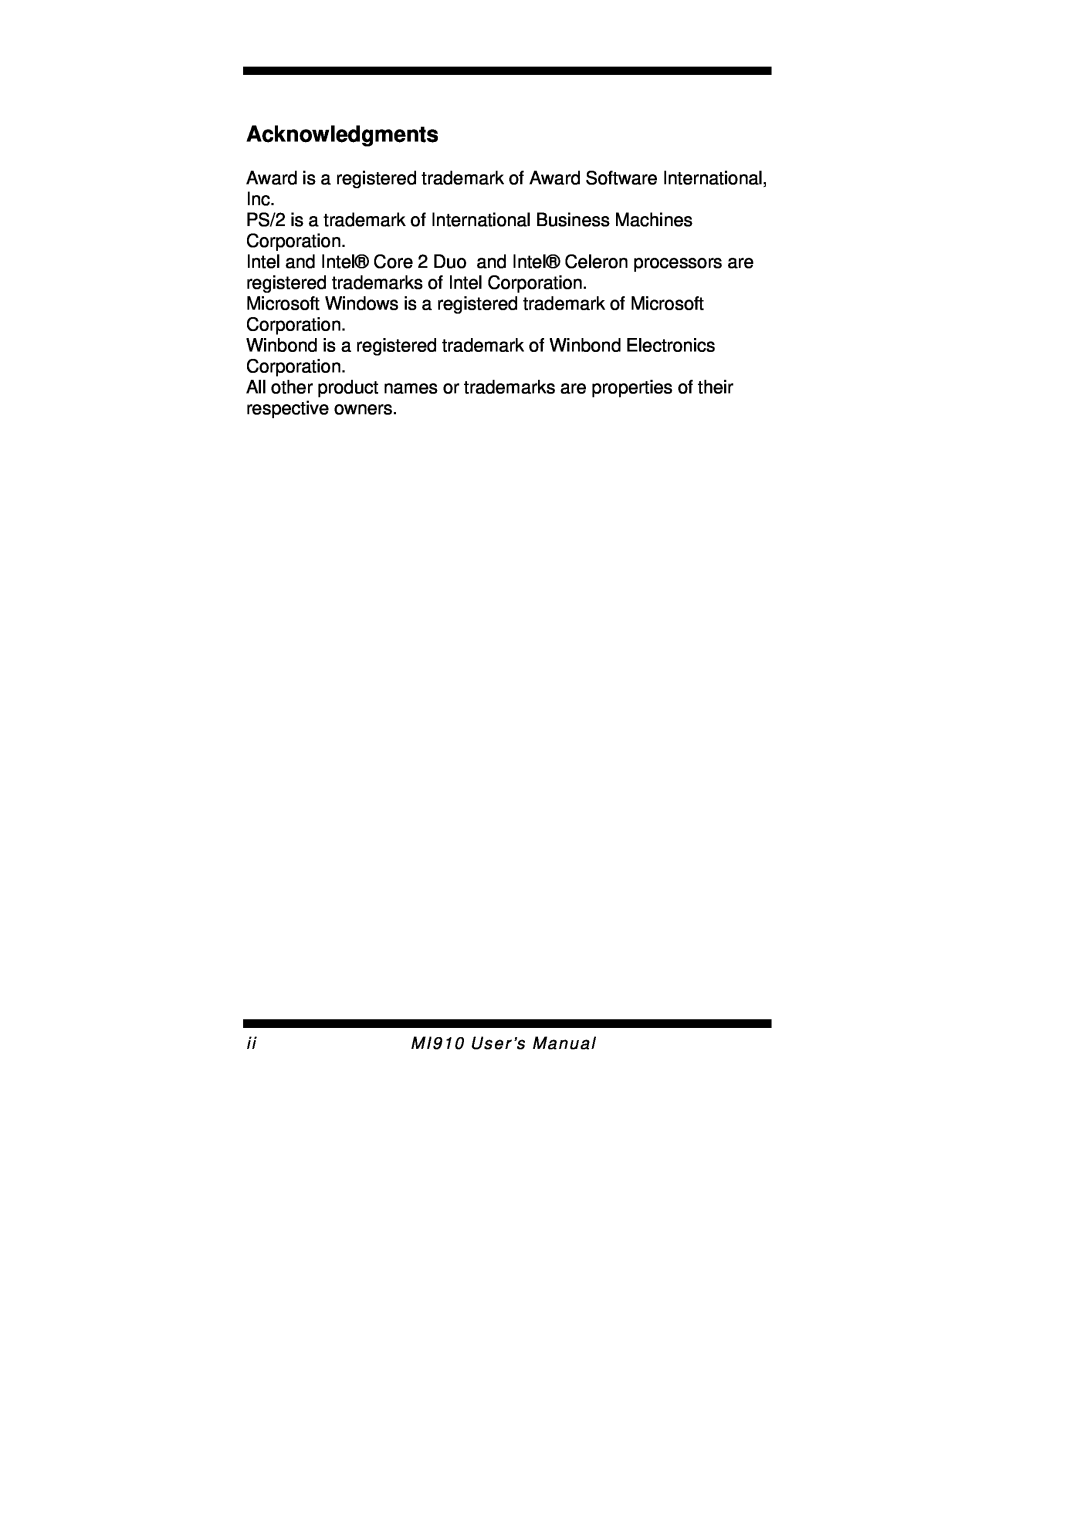 Intel MI910F user manual Acknowledgments, MI910 User’s Manual 